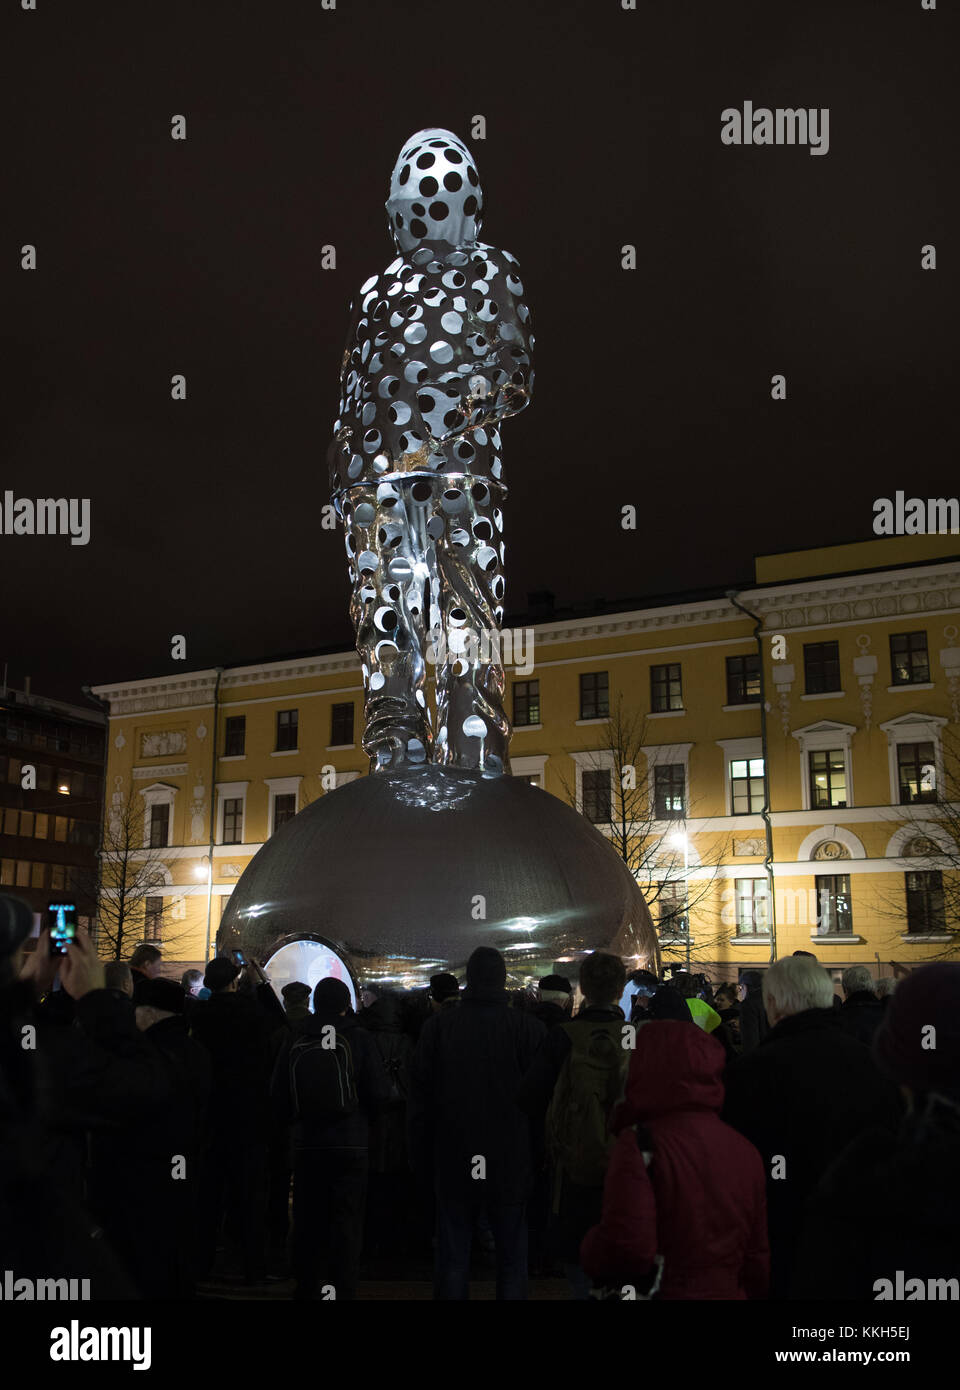 La sculpture en acier de Pekka Kauhanen représente un héros de la guerre d'hiver finlandaise 1939-40. Credit: Hannu Mononen/Alamy Live News Banque D'Images